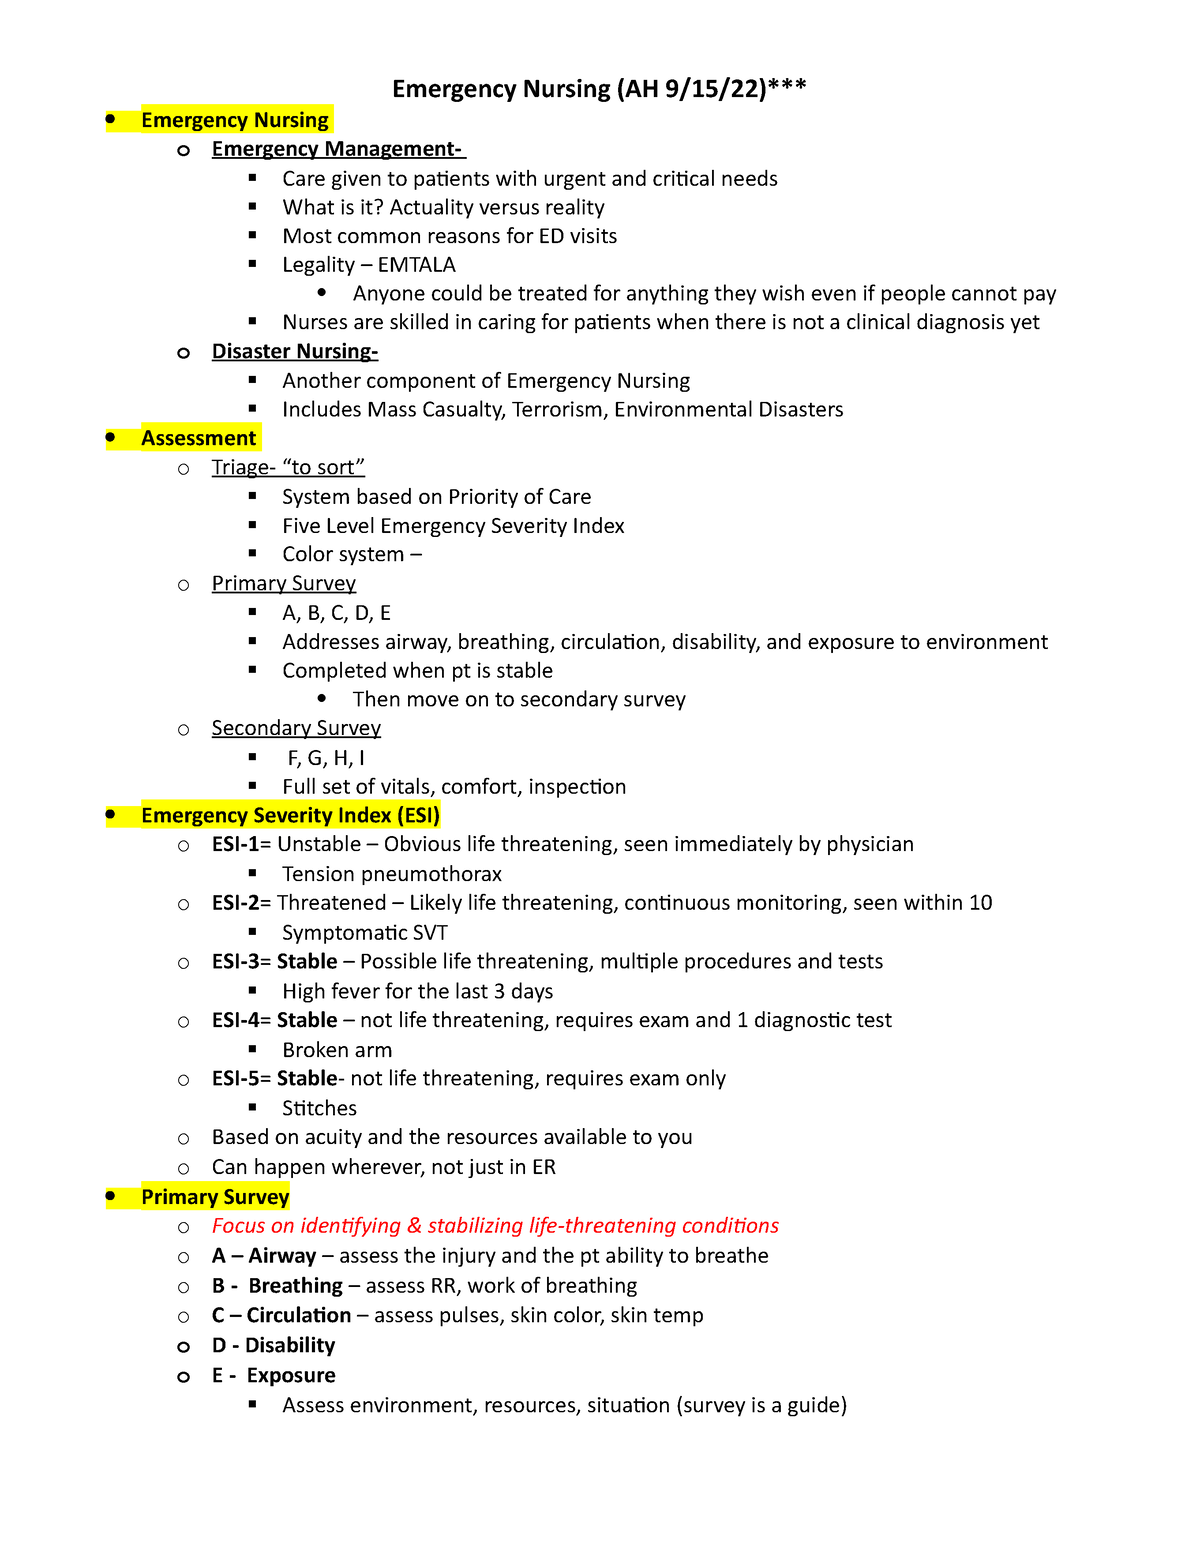 Emergency Nursing Notes - Emergency Nursing (AH 9/15/22)*** Emergency ...